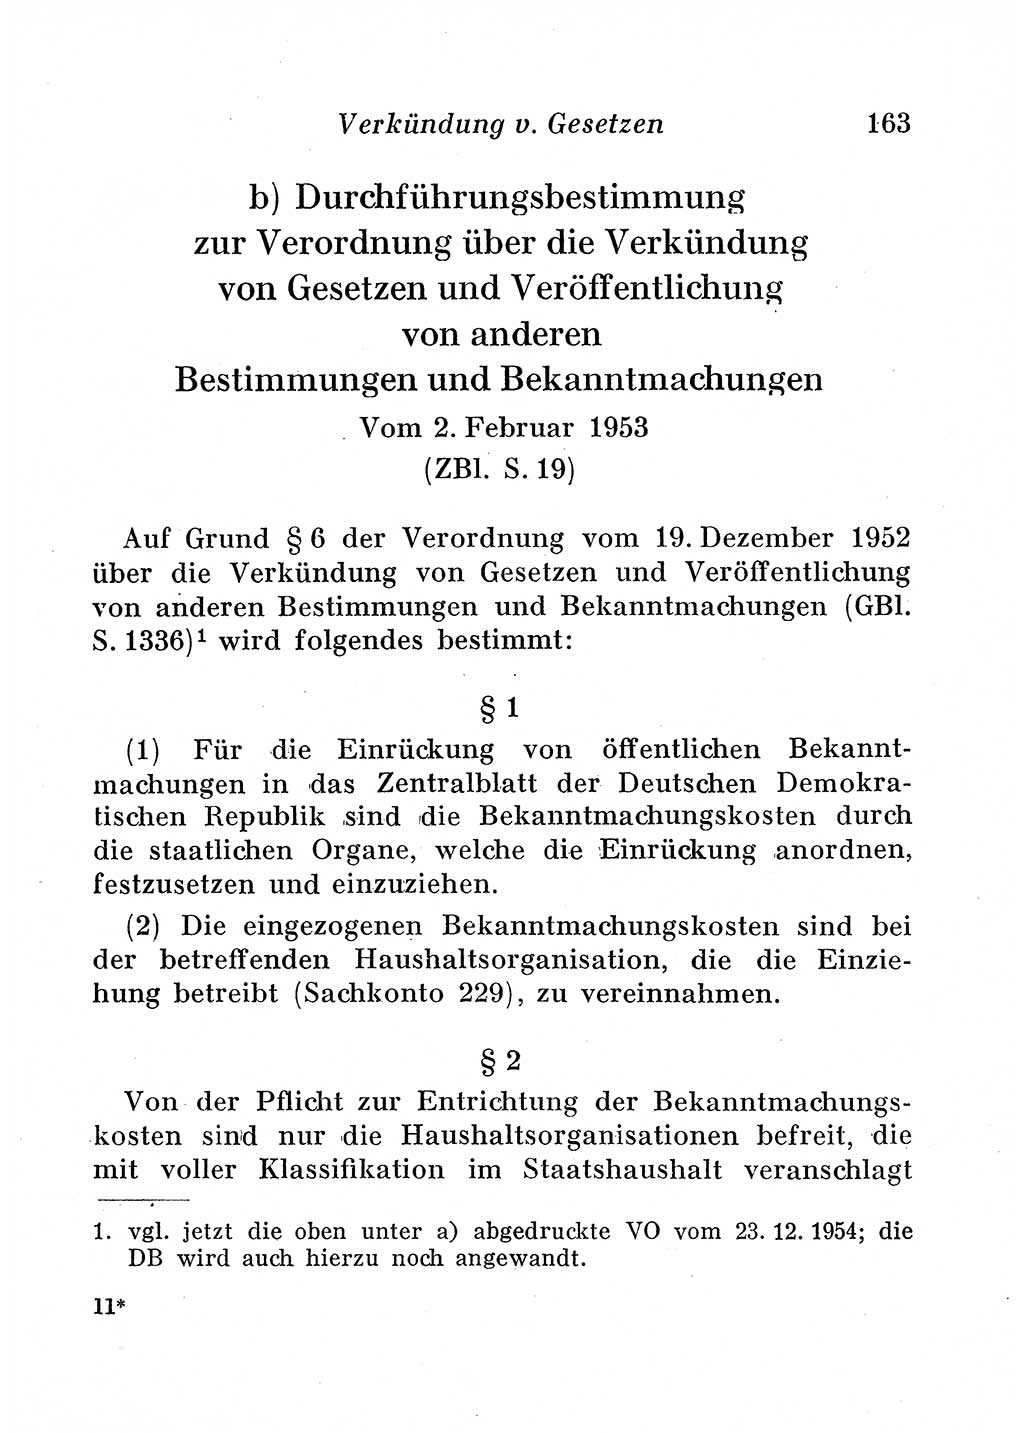 Staats- und verwaltungsrechtliche Gesetze der Deutschen Demokratischen Republik (DDR) 1958, Seite 163 (StVerwR Ges. DDR 1958, S. 163)